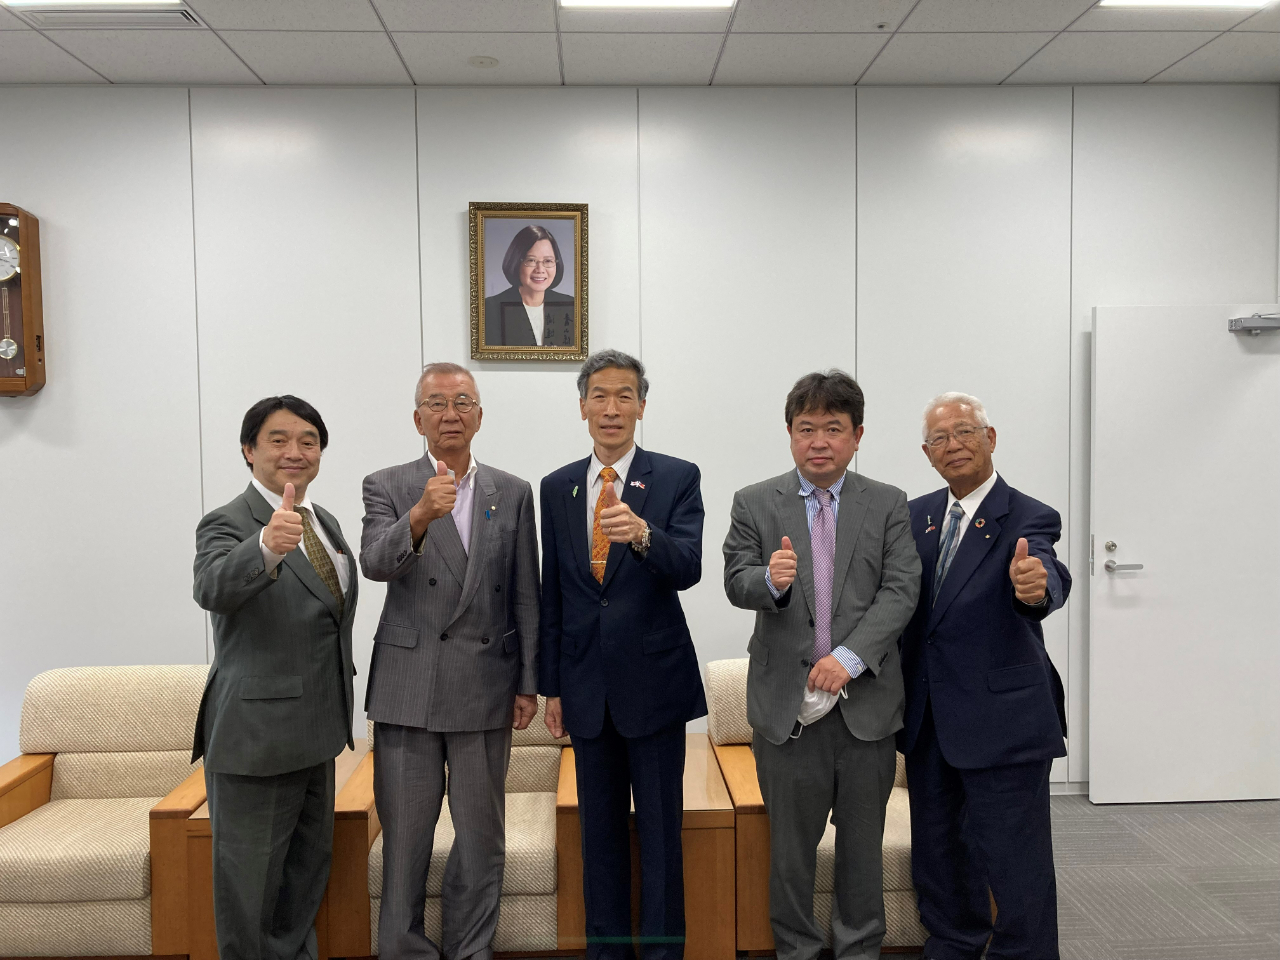 左より: 杉中氏、辻井副会長、向処長、鈴木氏、永野前会長